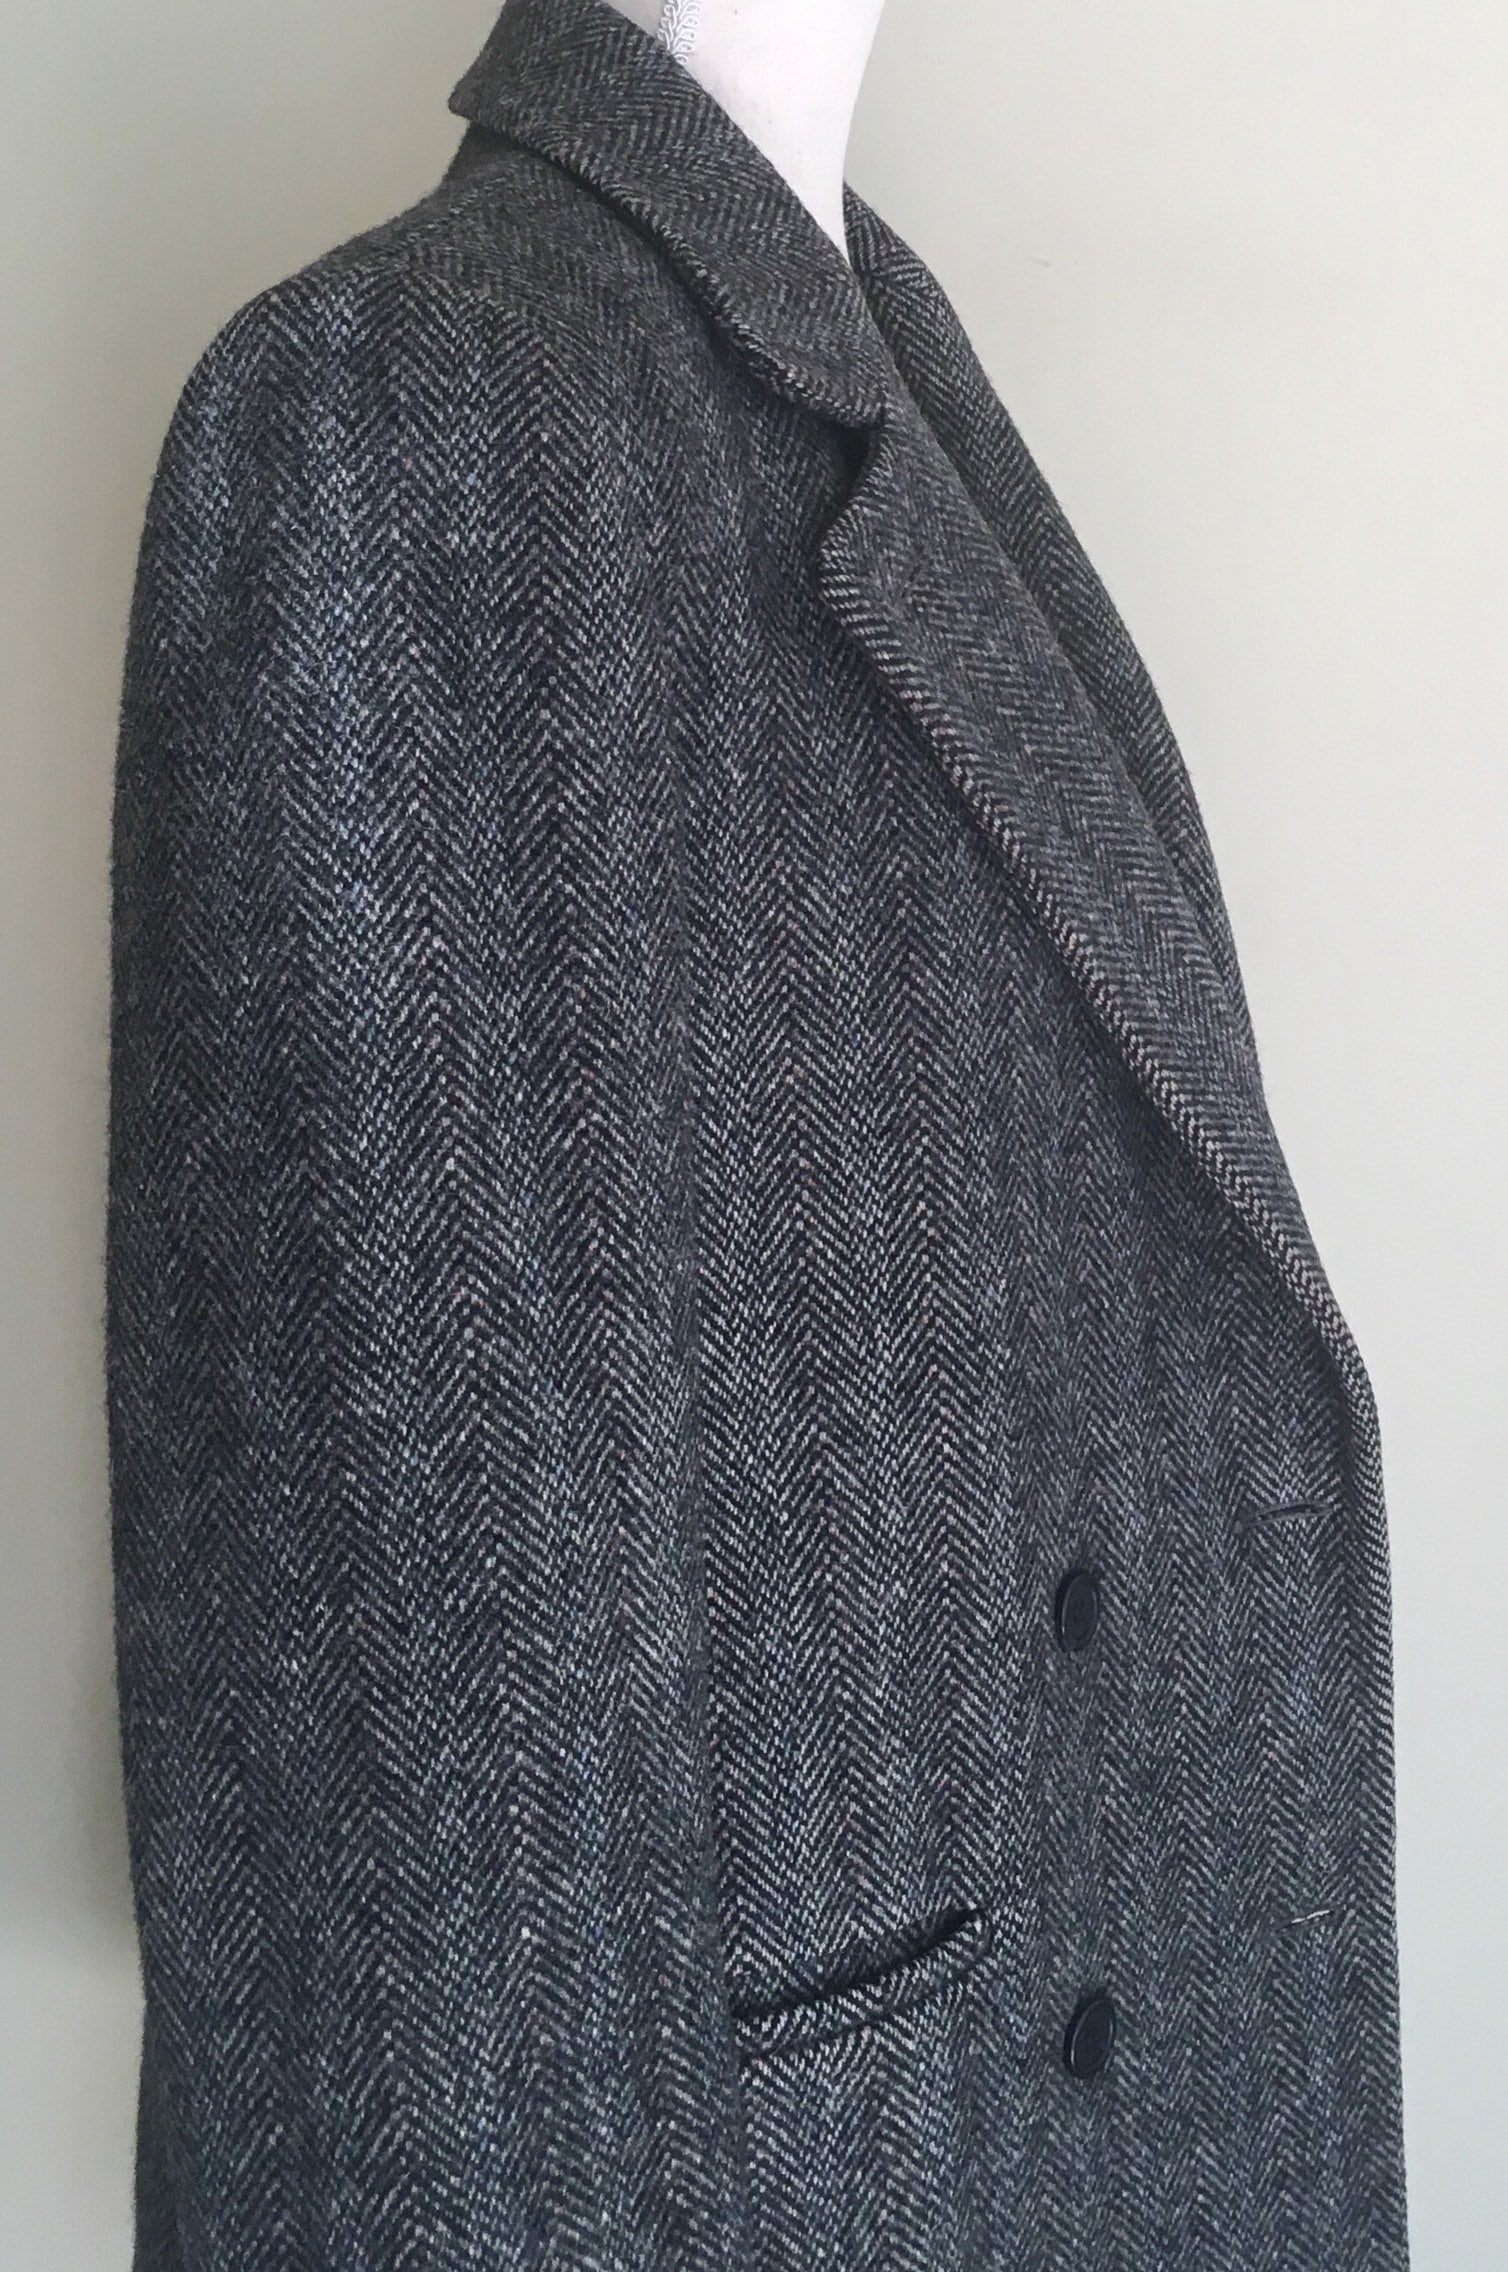 Oversized Herringbone Tweed Coat Jacket Vintage J G Hook Grey Gray Wool ...